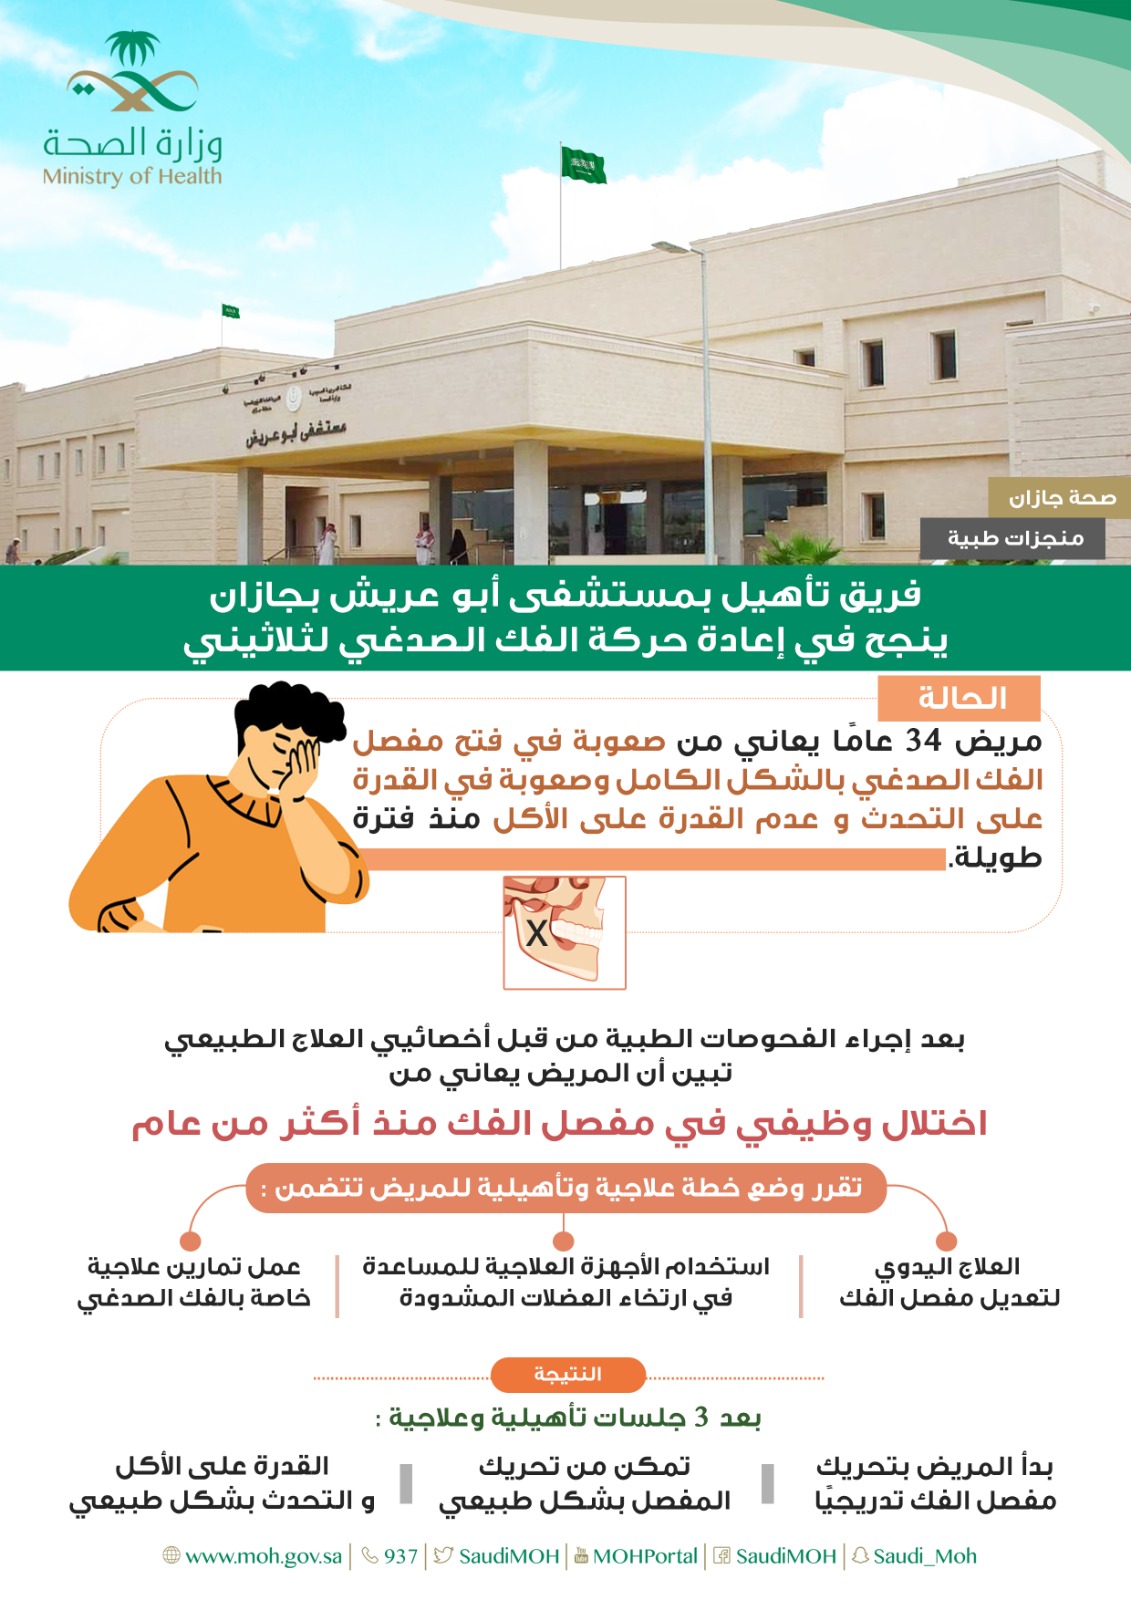 فريق تأهيل مستشفى أبو عريش ينجح في إعادة حركة الفك الصدغي لثلاثيني بجازان